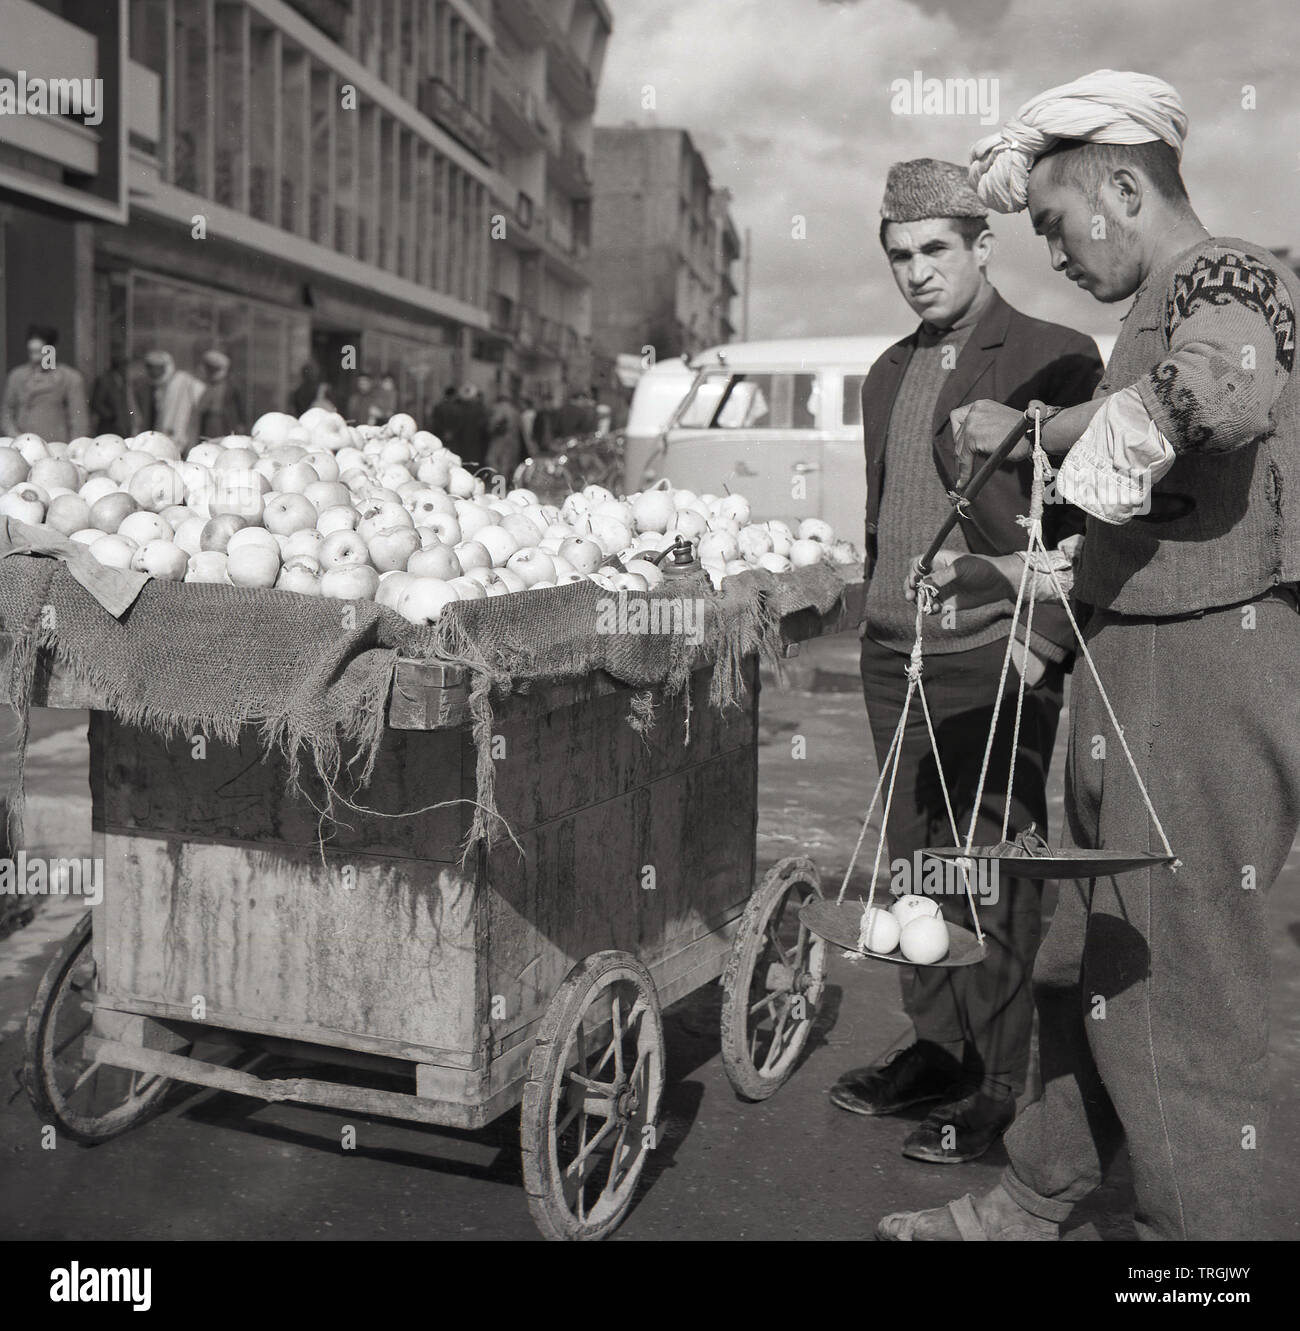 Années 1950, historiques, des fruits, un exposant dans la rue en Afghanistan, Kabal. Banque D'Images